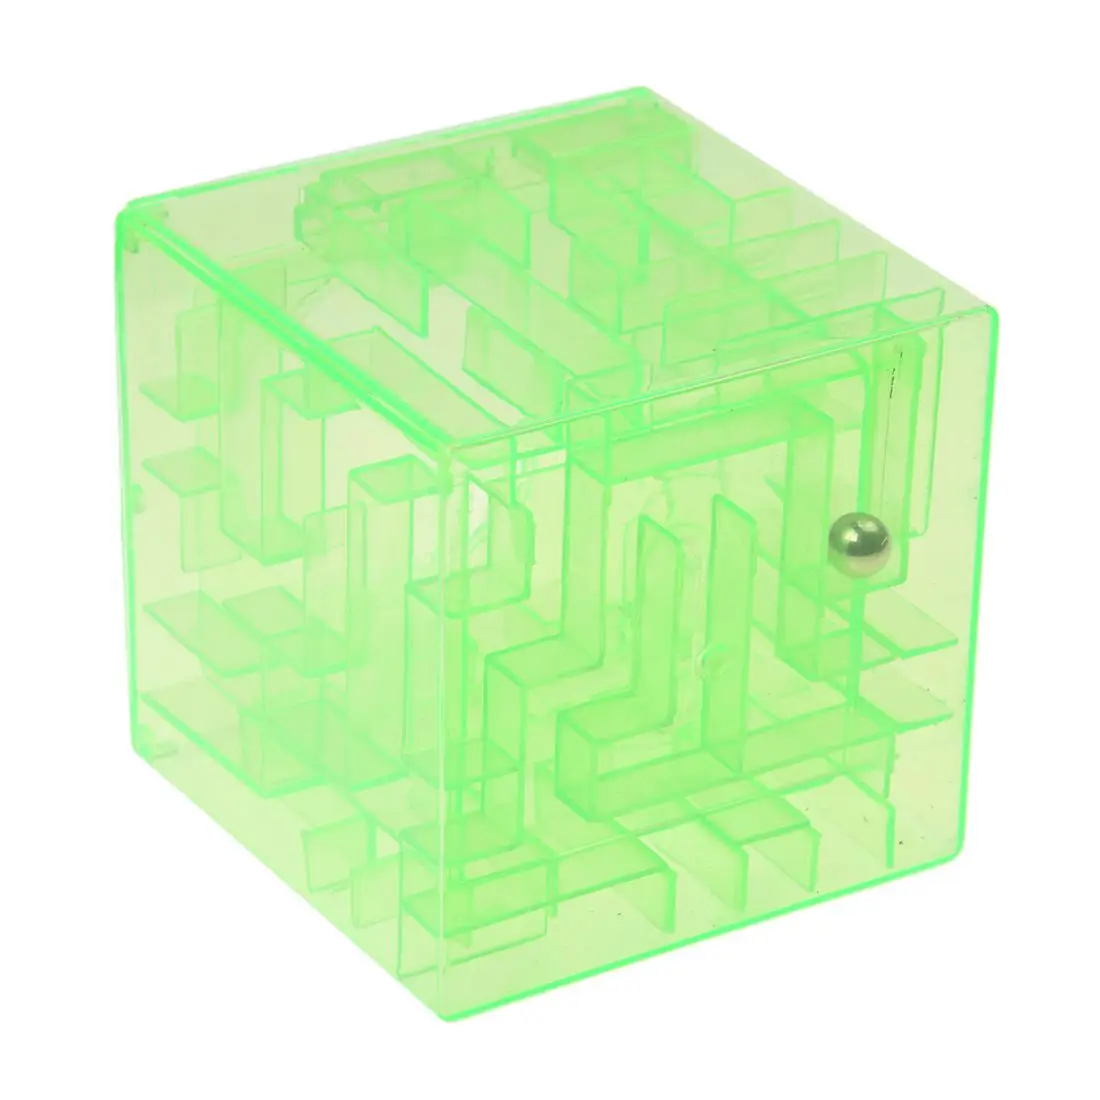 Пластик кубический деньги Лабиринт банк Копилка для монет Чехол для коллекции коробка 3D головоломки (зеленый)